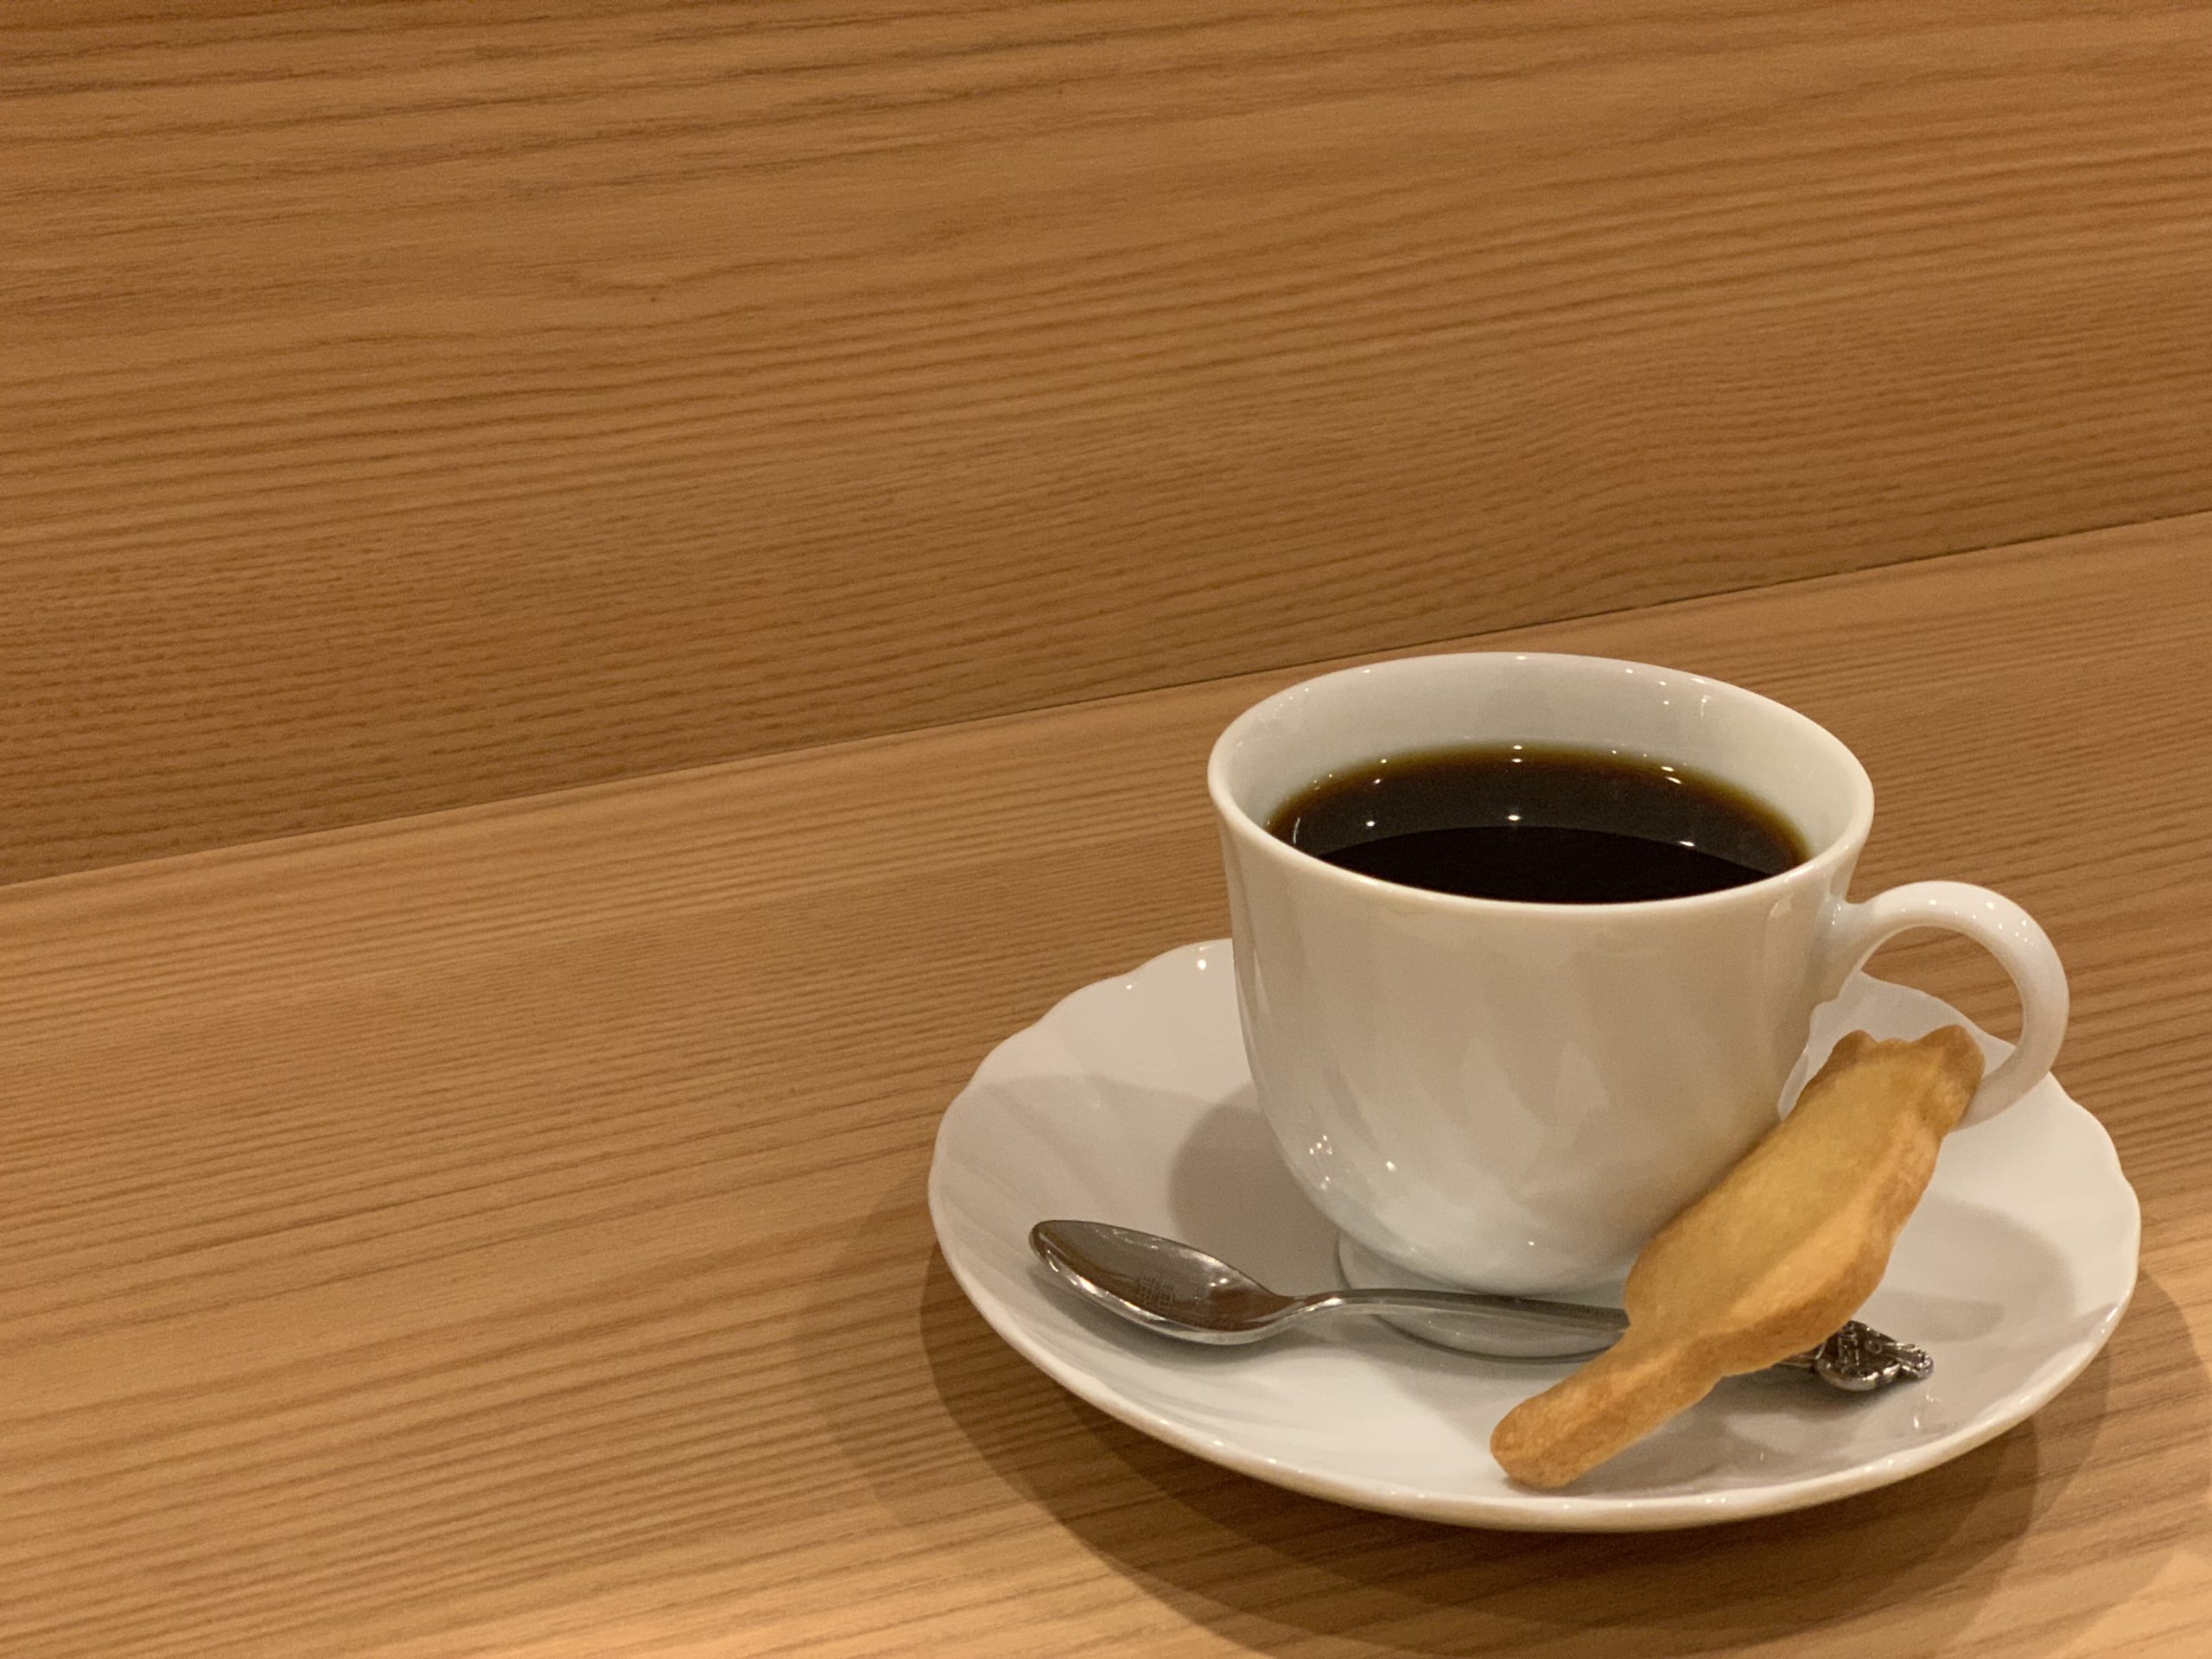 湯島駅3番出口　打ち合わせカフェ　Eagle Café（イーグルカフェ）